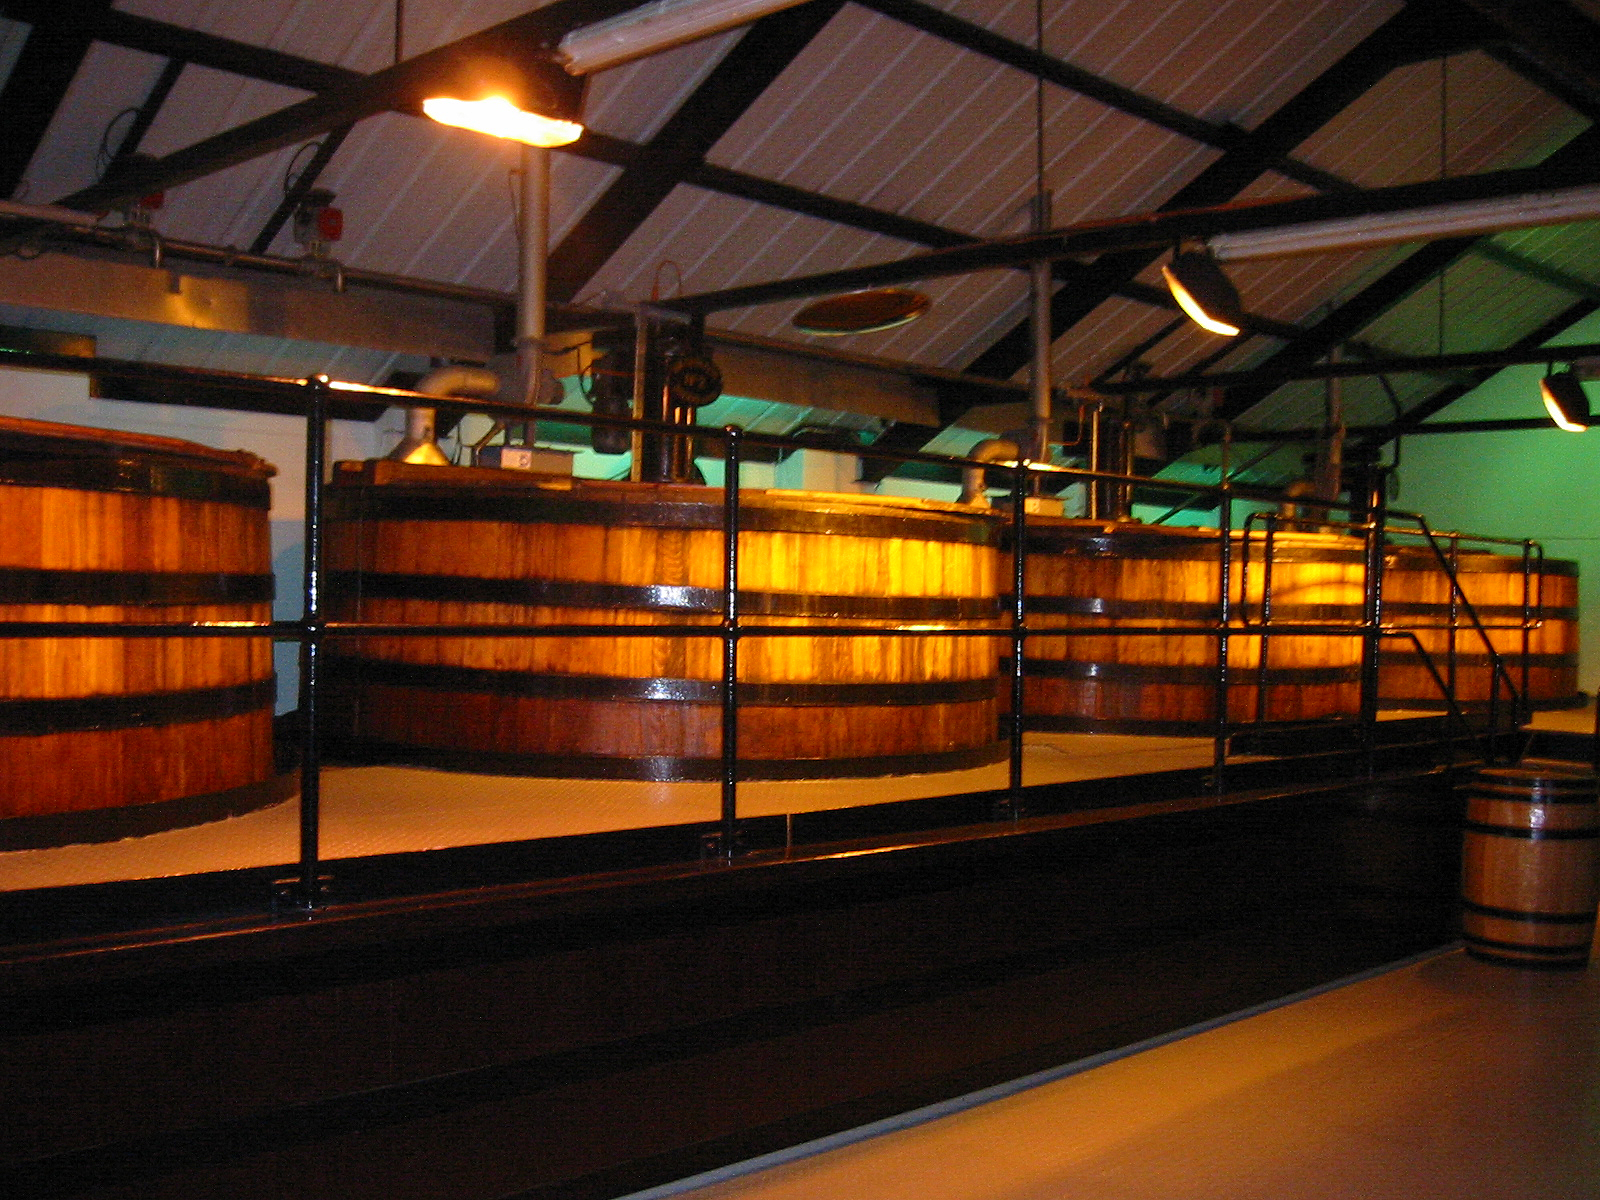 Whisky im Bild: Maischbottiche in Auchentoshan